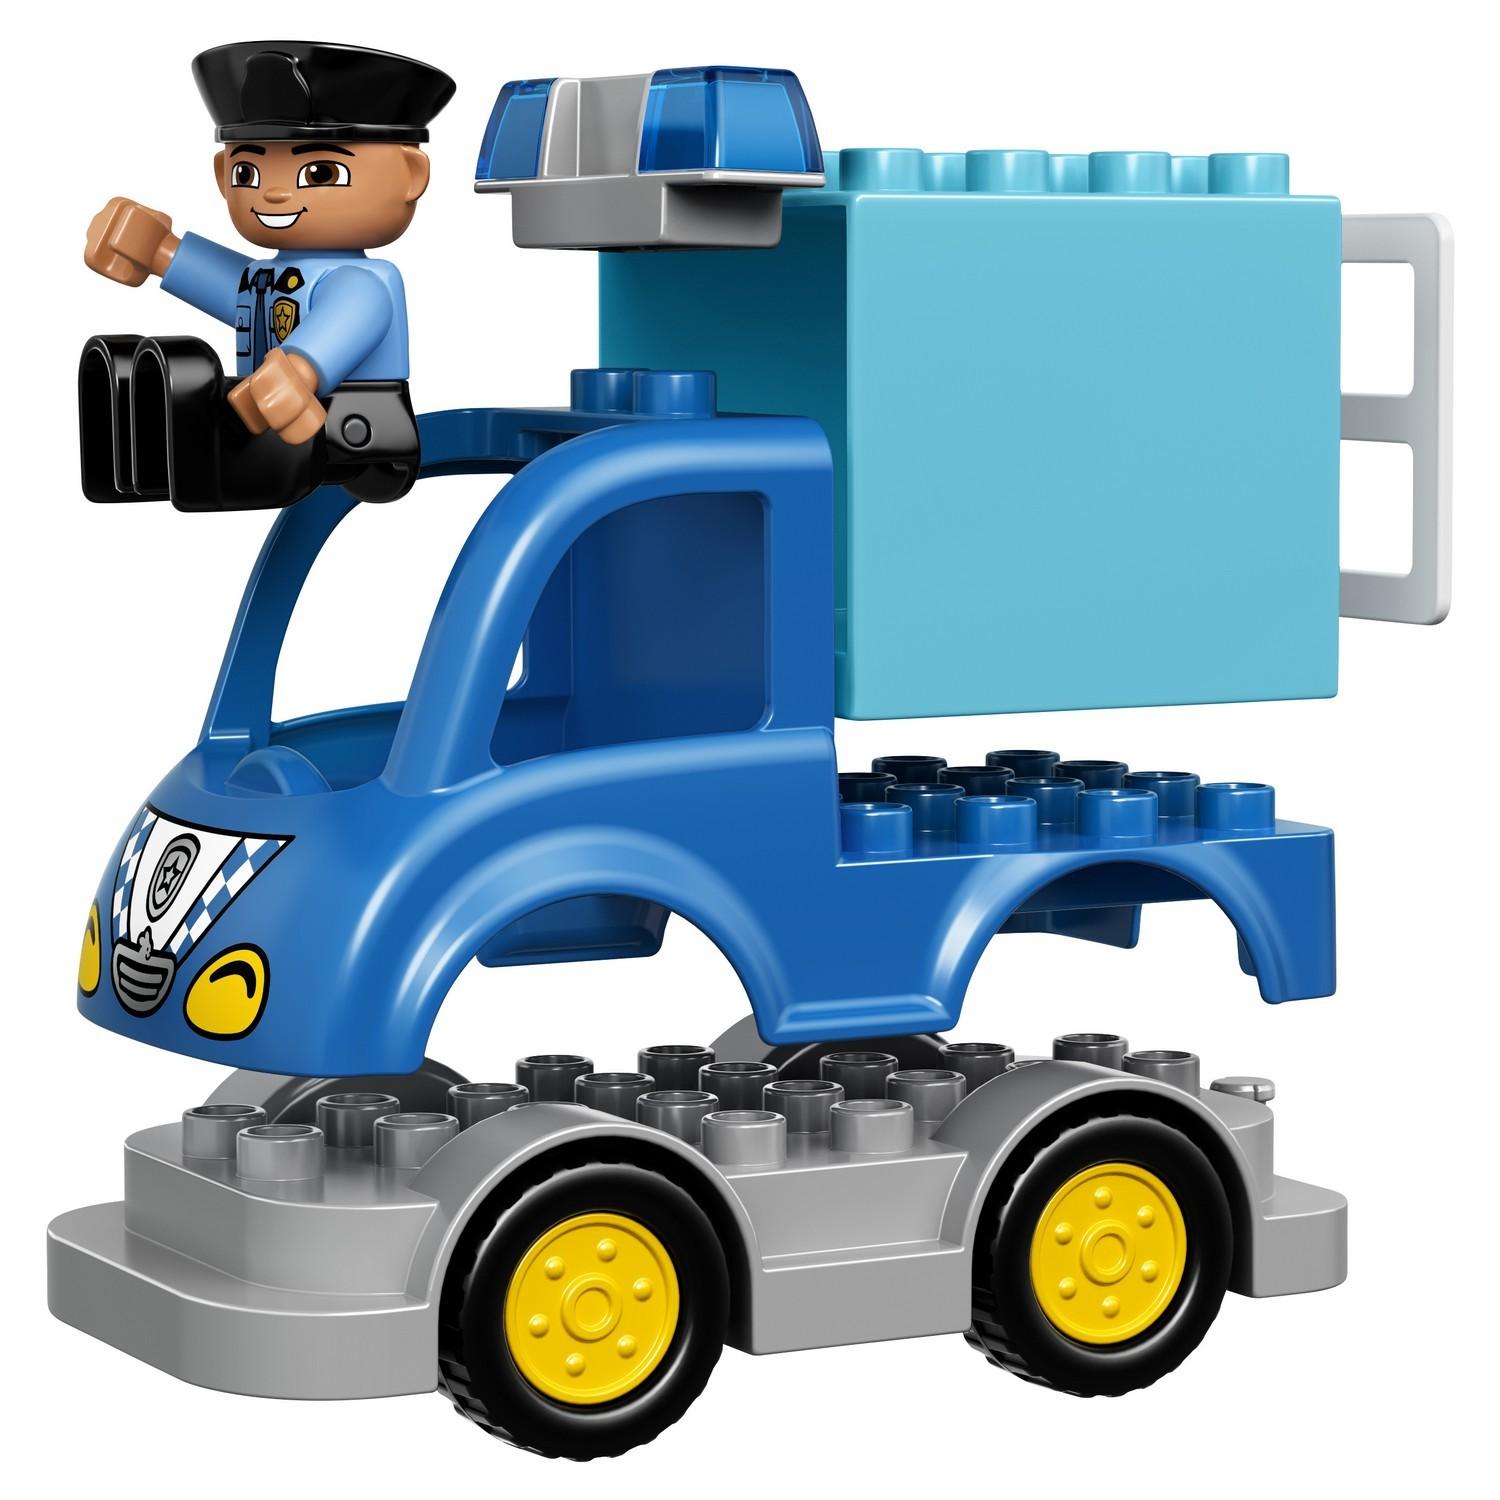 Lego Duplo 10809 Полицейский патруль